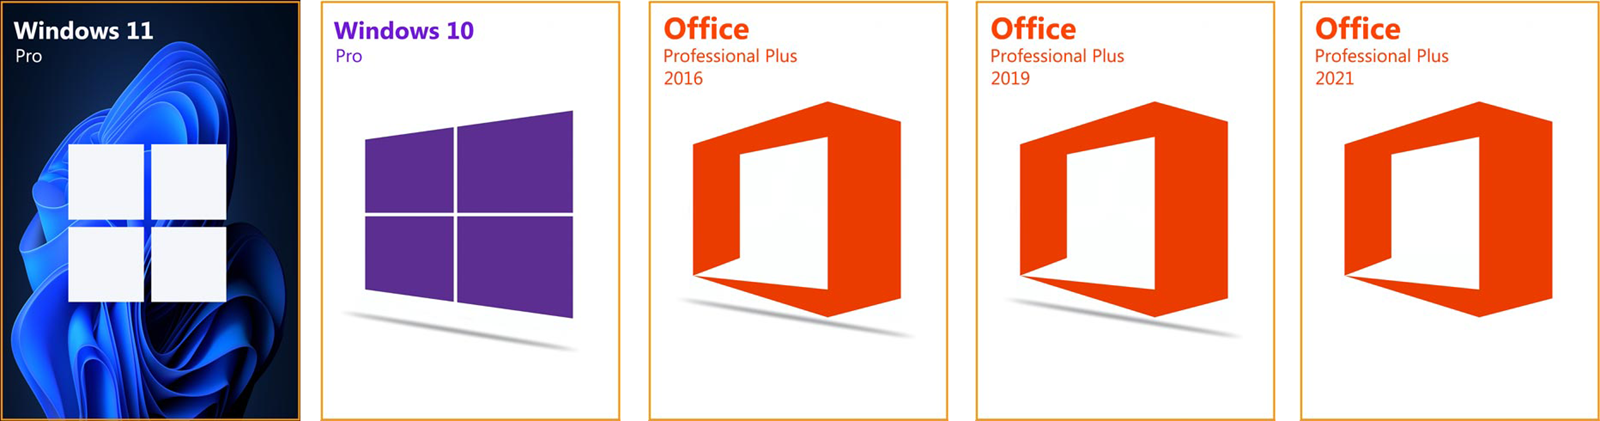 OEM aktivacijski ključevi za softver po super cijenama - Windows 10 samo  7,80 €, Office 2016 18,78 € - Promo @ Bug.hr